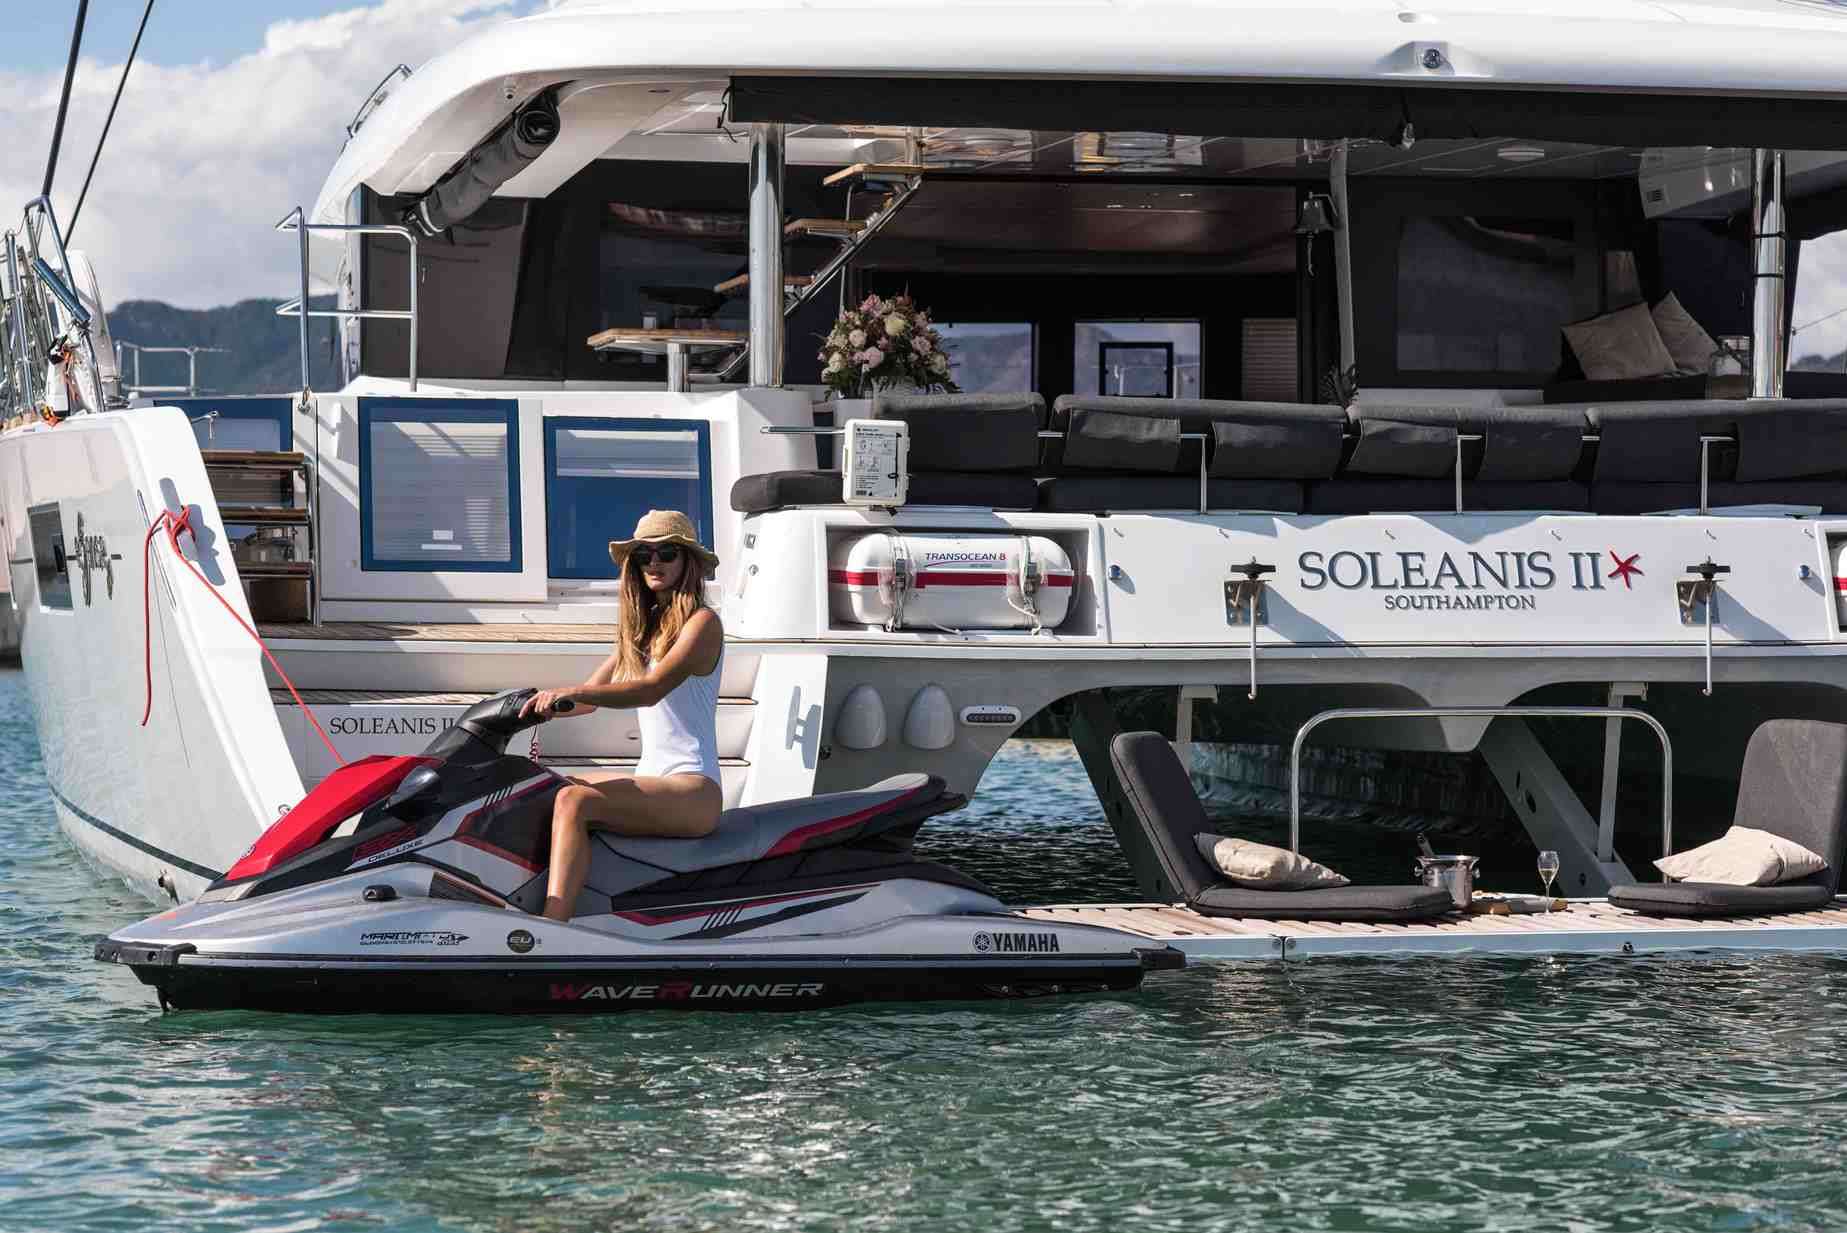 Soleanis II - Yacht Charter Gaeta & Boat hire in Fr. Riviera & Tyrrhenian Sea 4